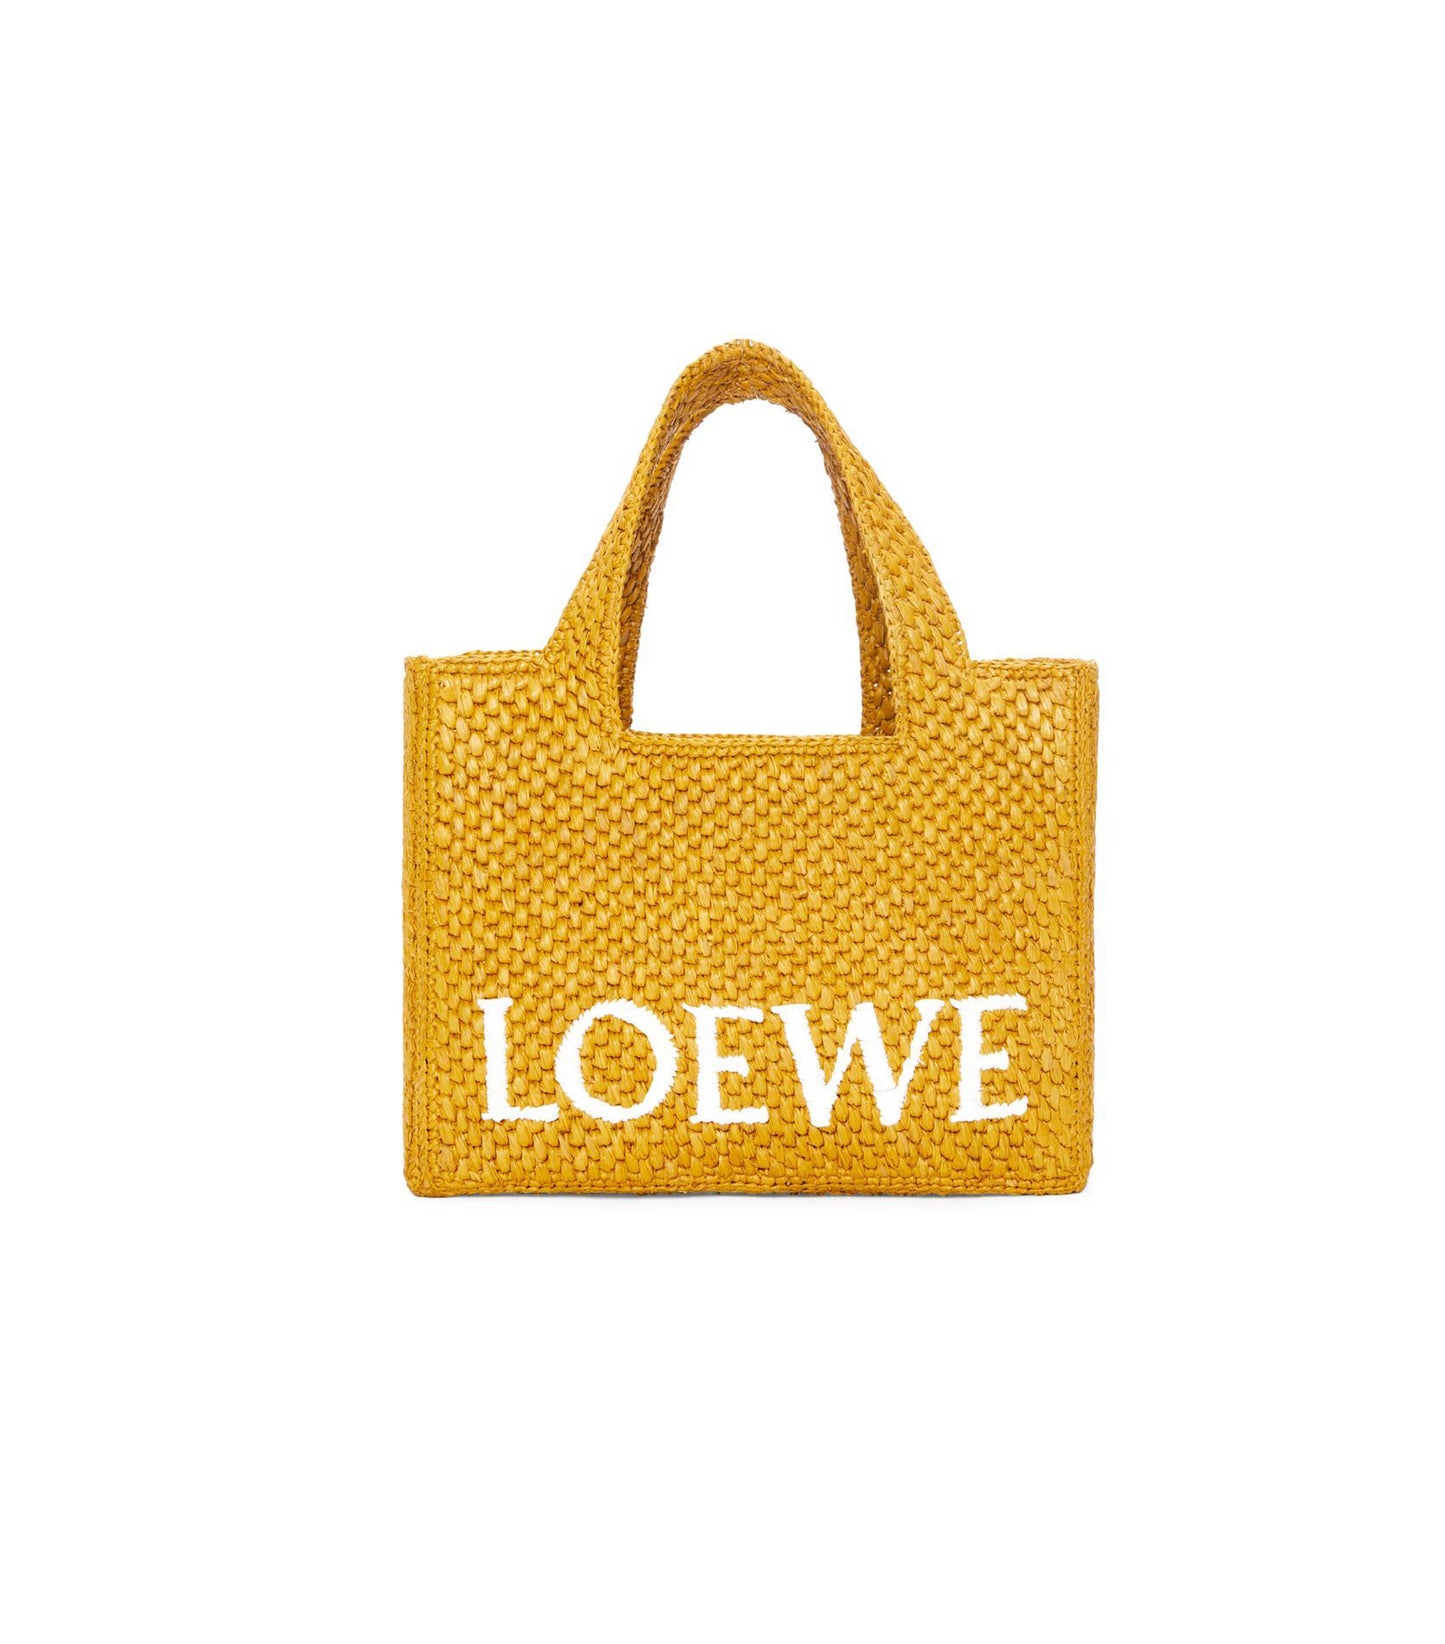 Sac Loewe - Font Tote en raphia - Jaune